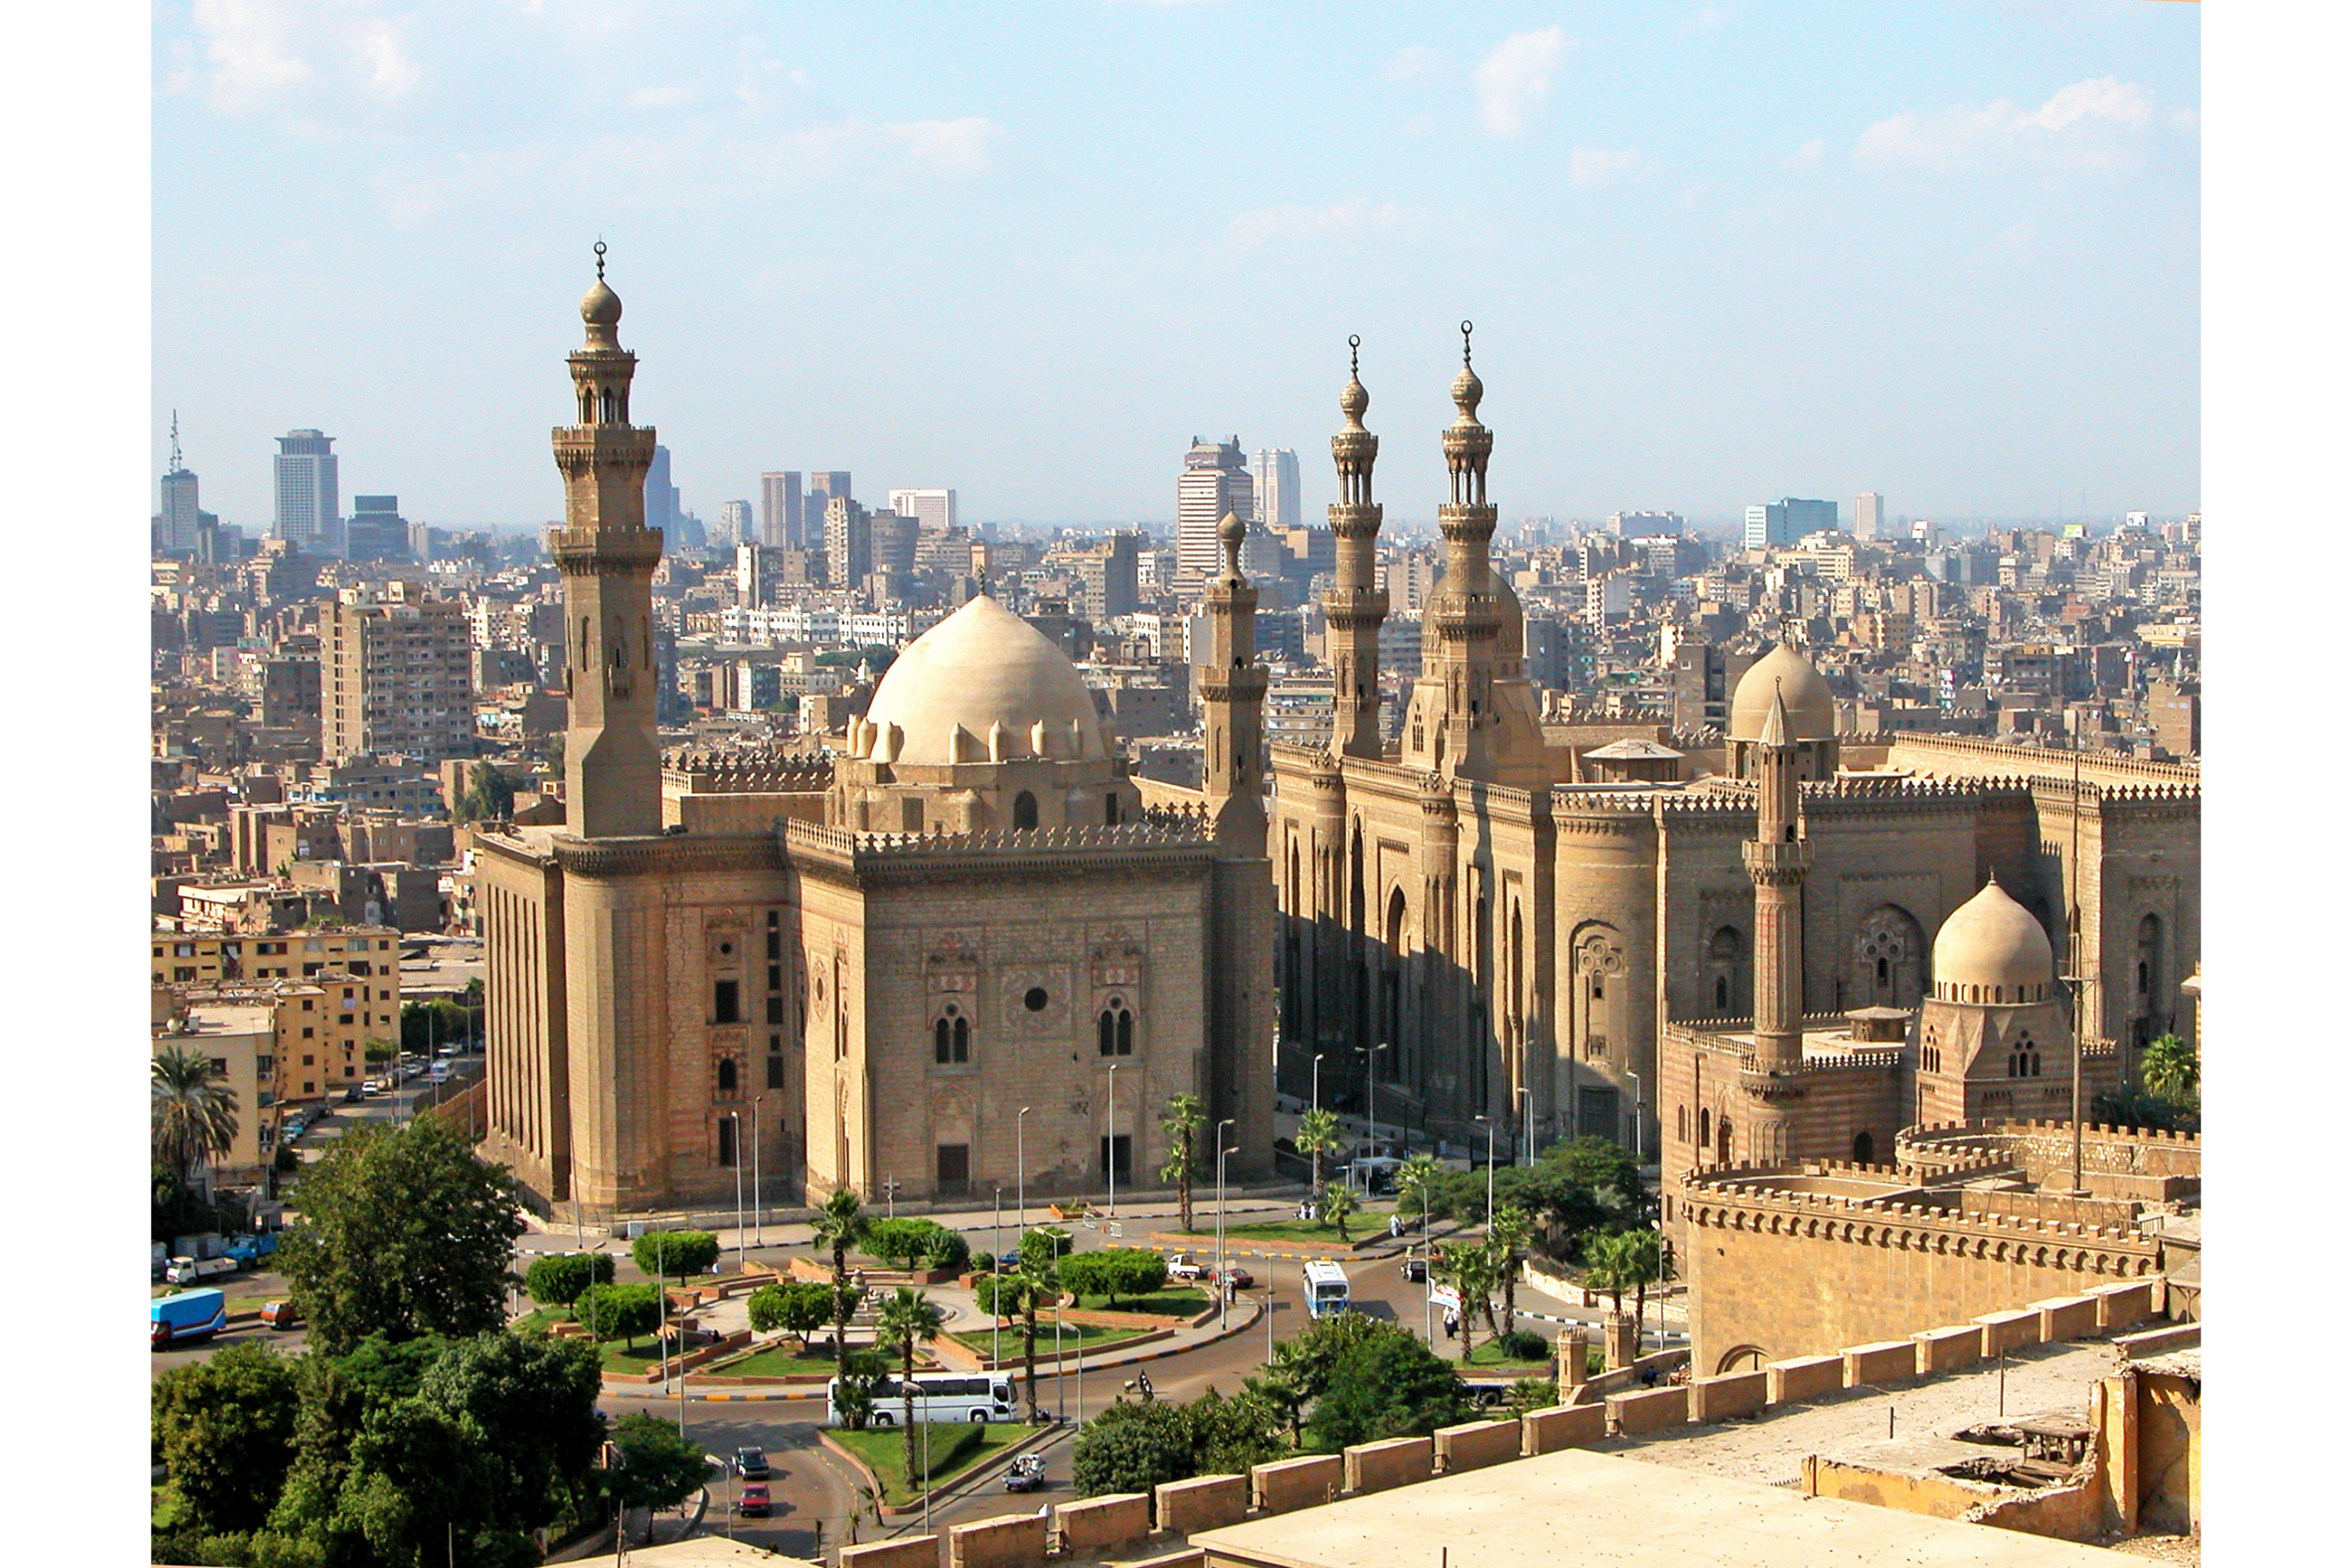 Day 3: Cairo